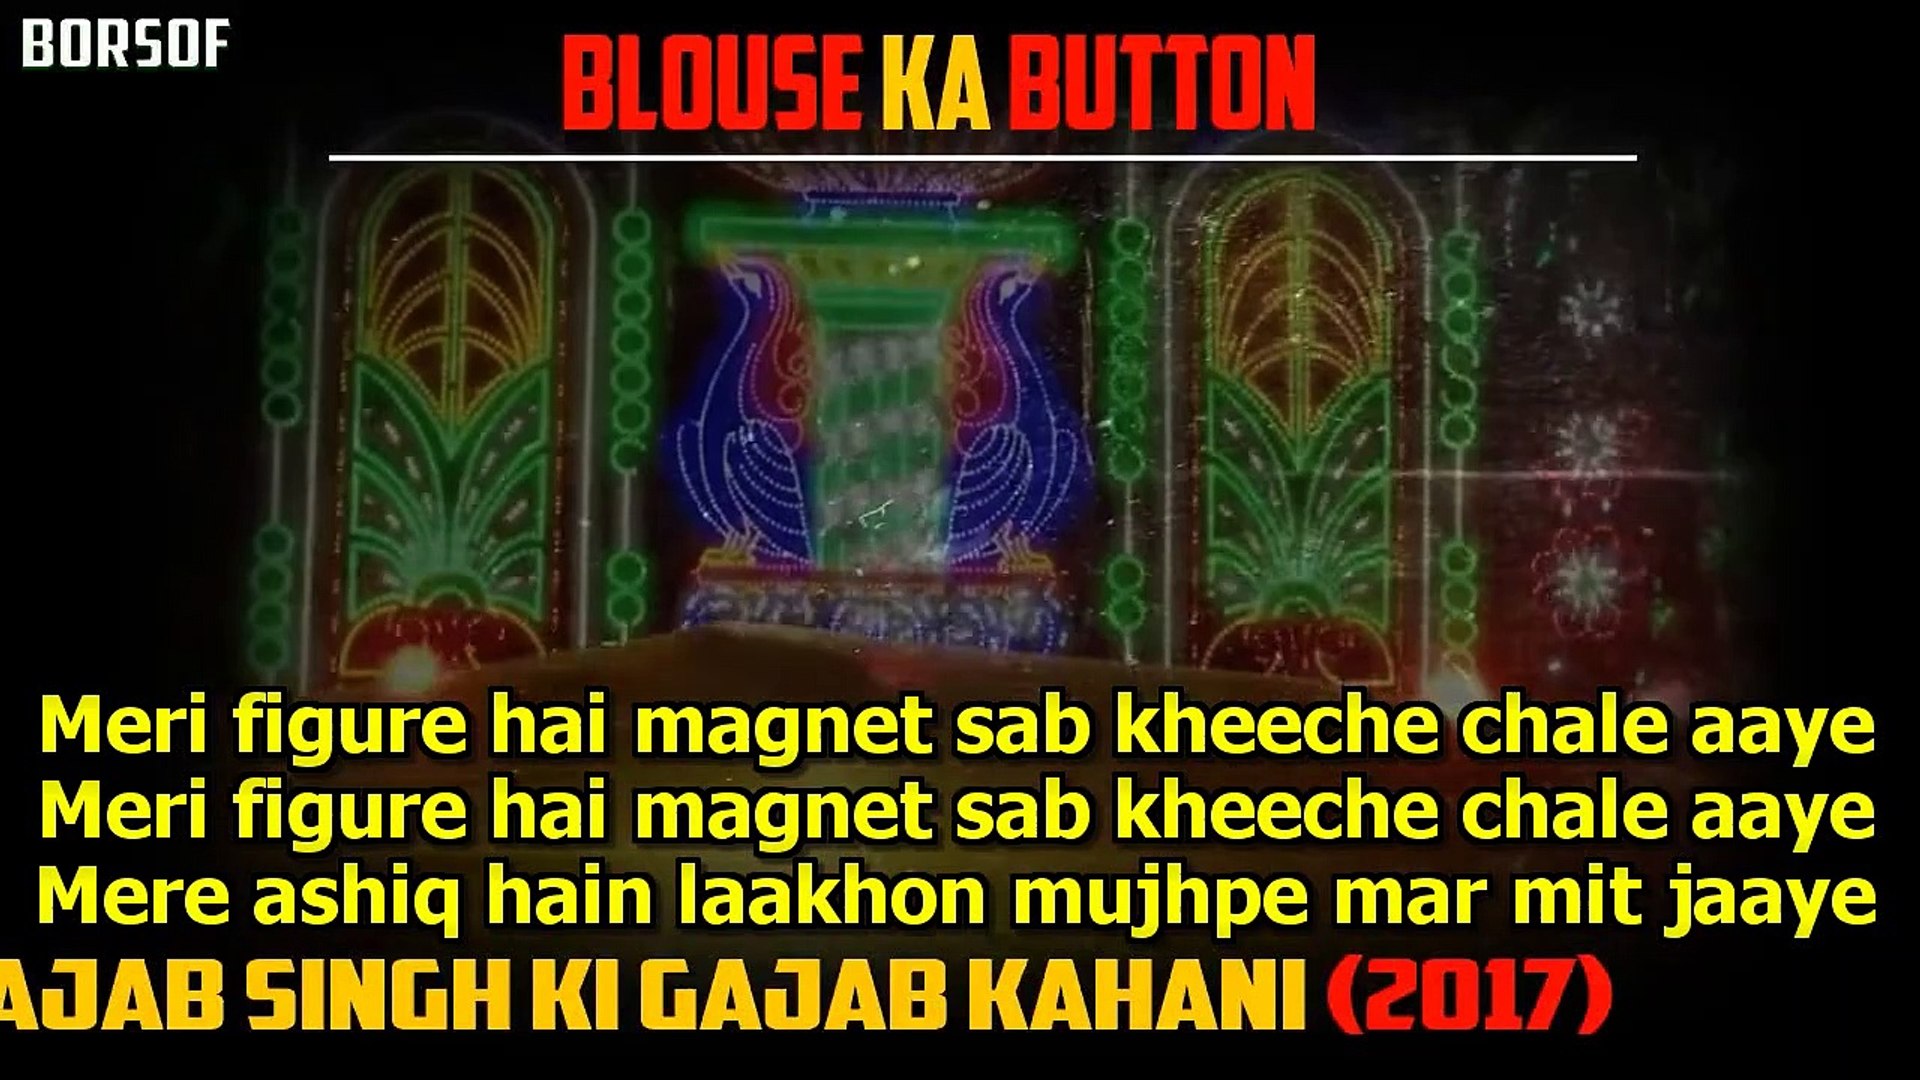 Blouse Ka Button Lyrical Video_ Ajab Singh Ki Gajab Kahani Songs Lyrics _ Latest BORSOFTV